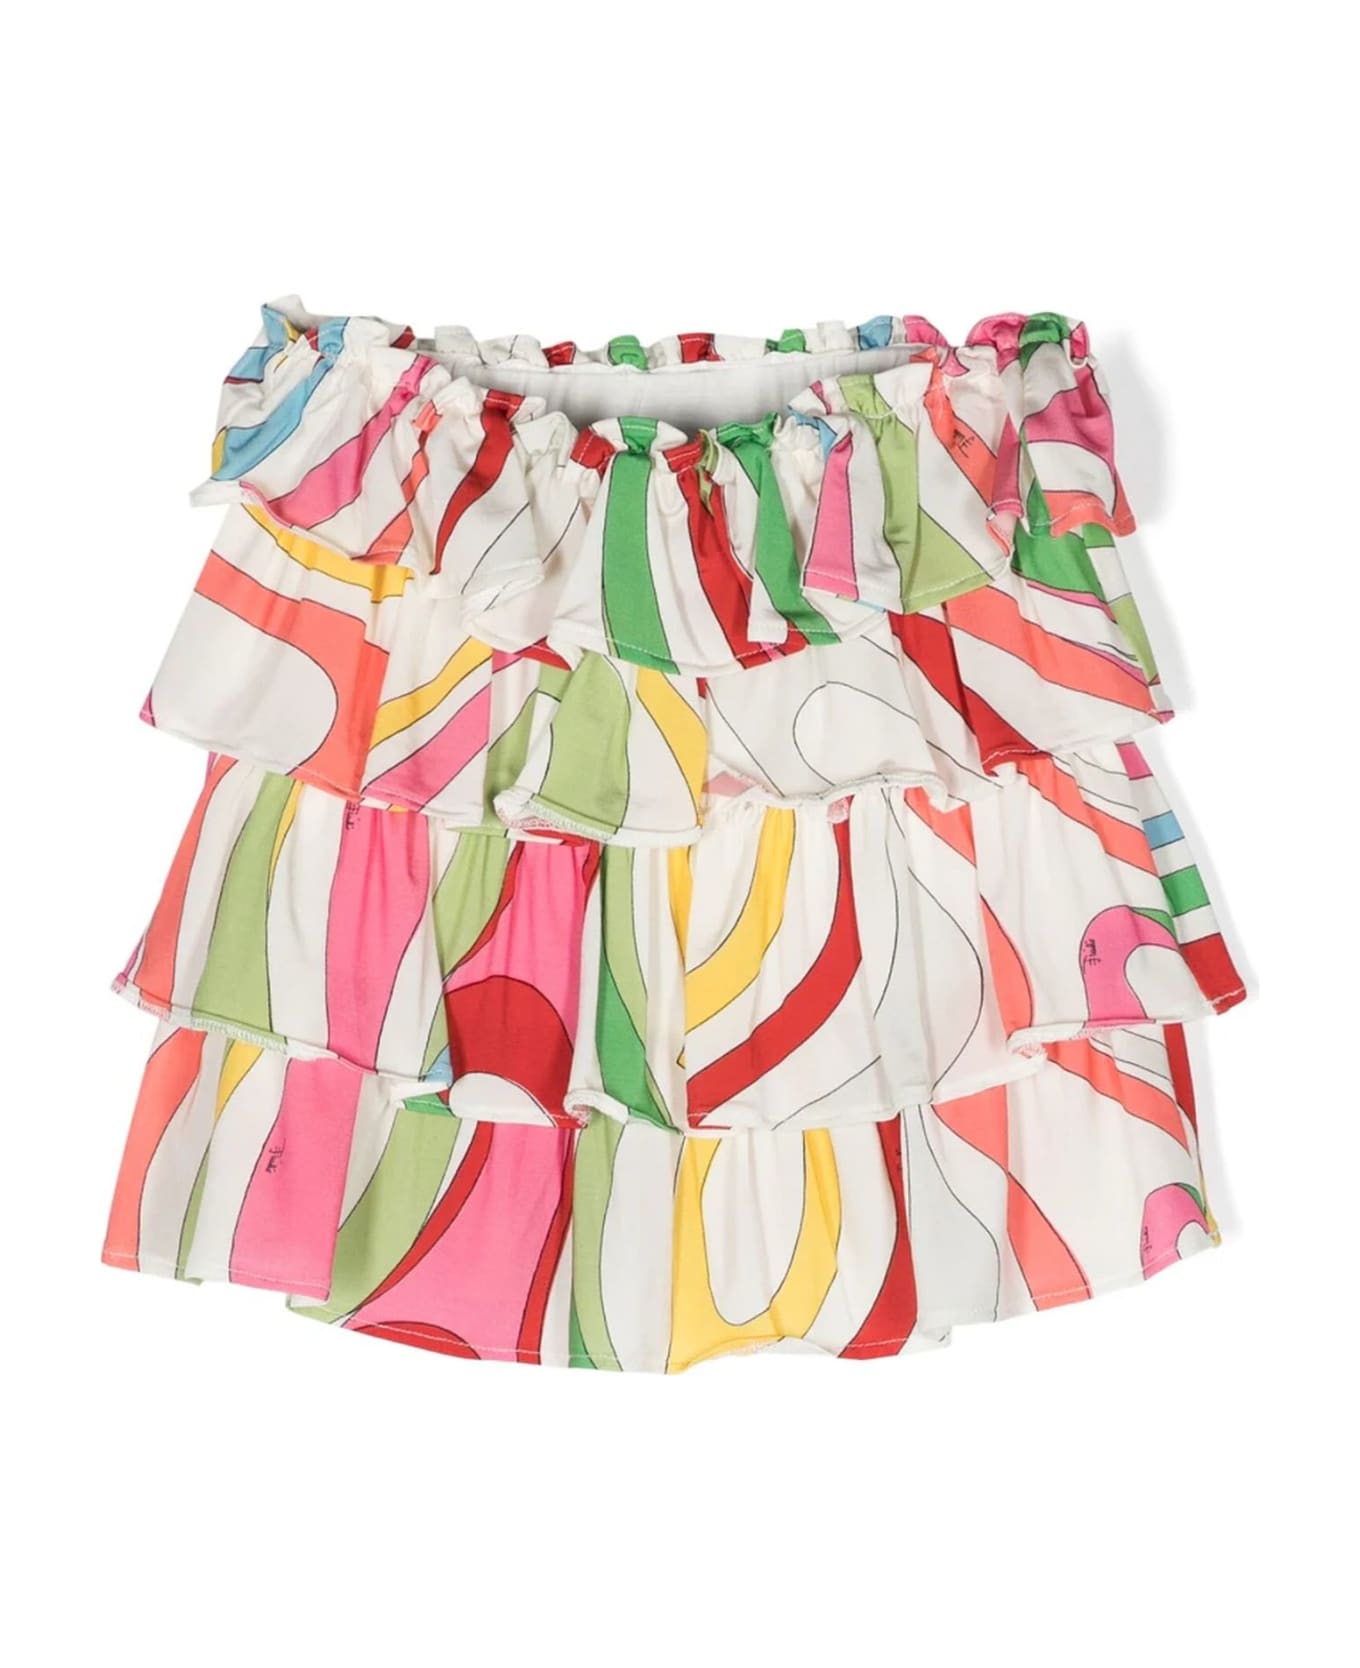 Pucci Emilio Pucci Skirts Multicolour - MultiColour